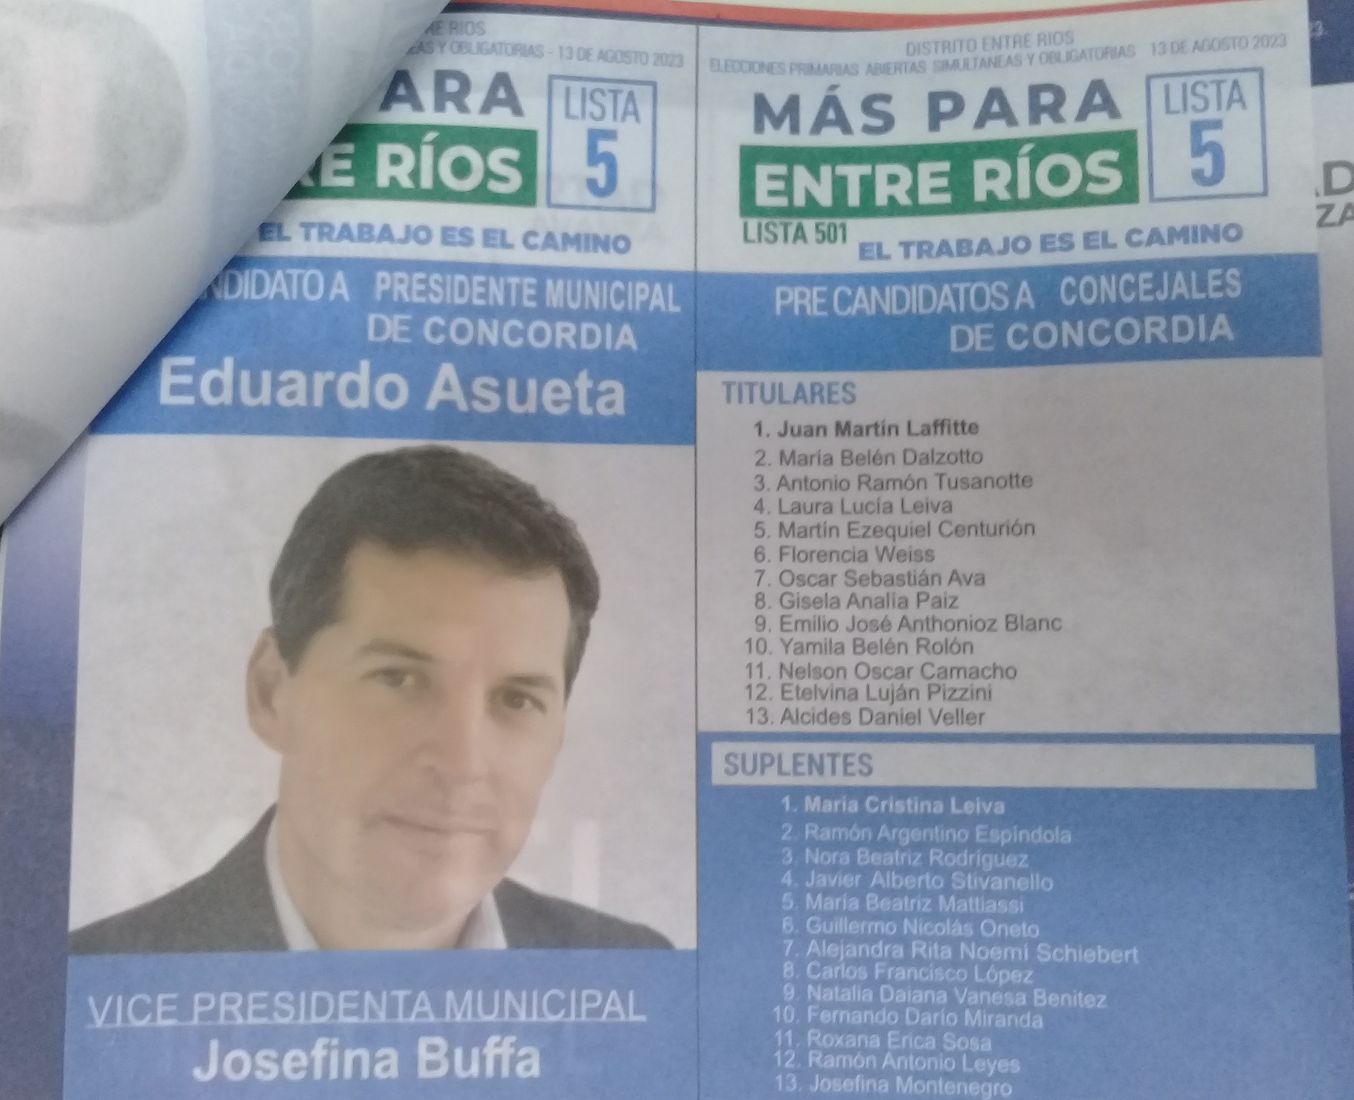 Lista 501: Más Para Entre Ríos - Eduardo Asueta.